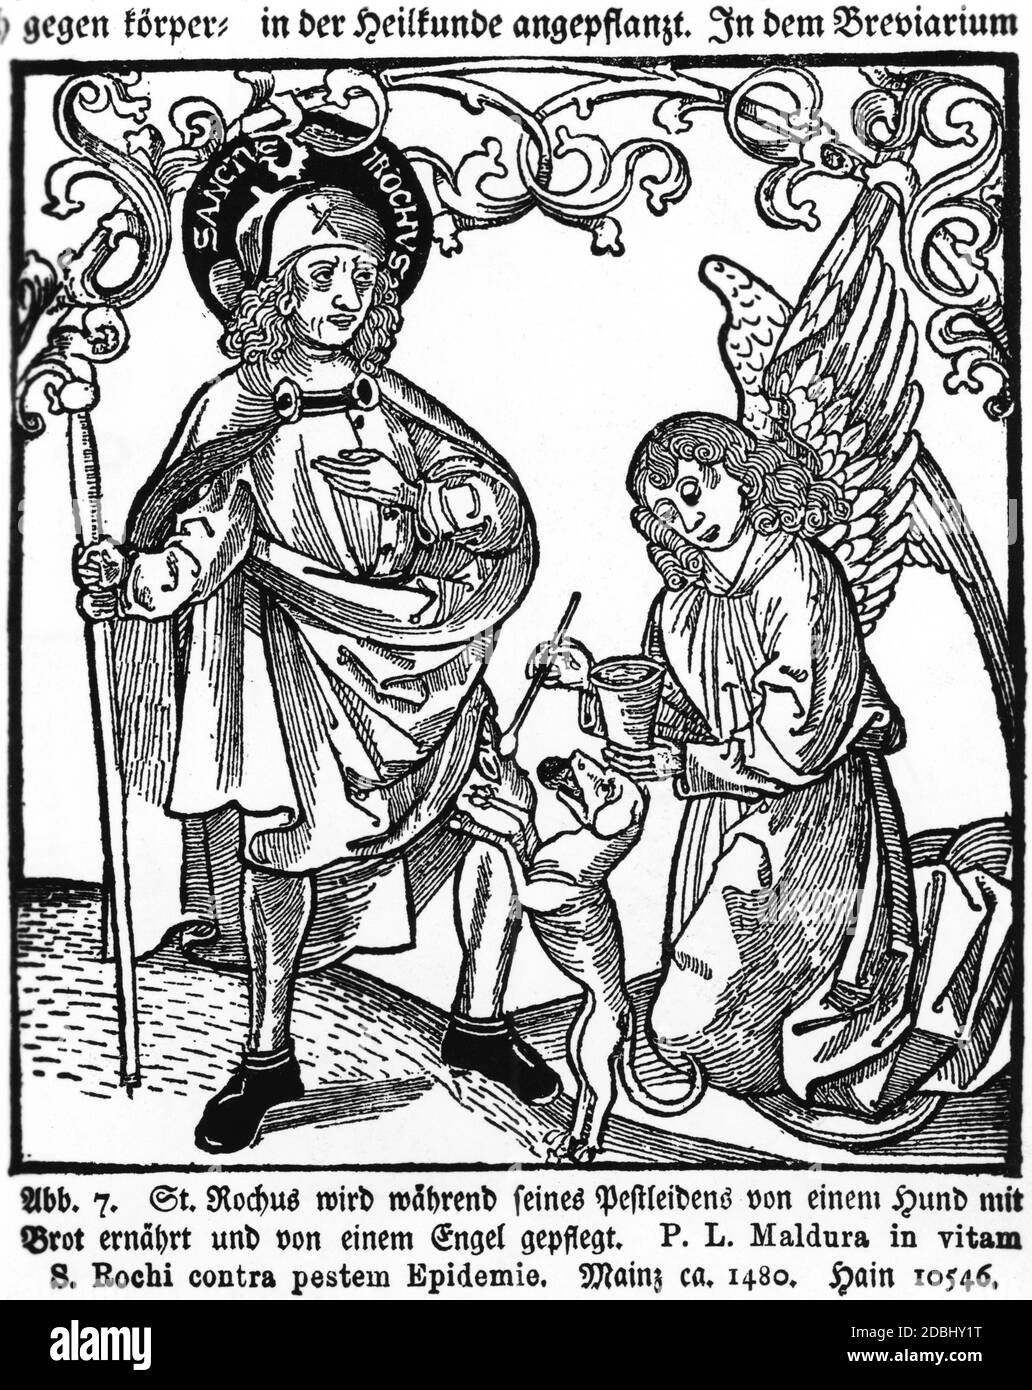 Der Heilige Rochus wird von einem Hund gefüttert, während er an der Pest erkrankt ist und von einem Engel gepflegt wird. Holzschnitt Mainz ca. 1480. Rochus lebte von 1295 bis 1327 und erkrankte 1320 an der Pest. Stockfoto